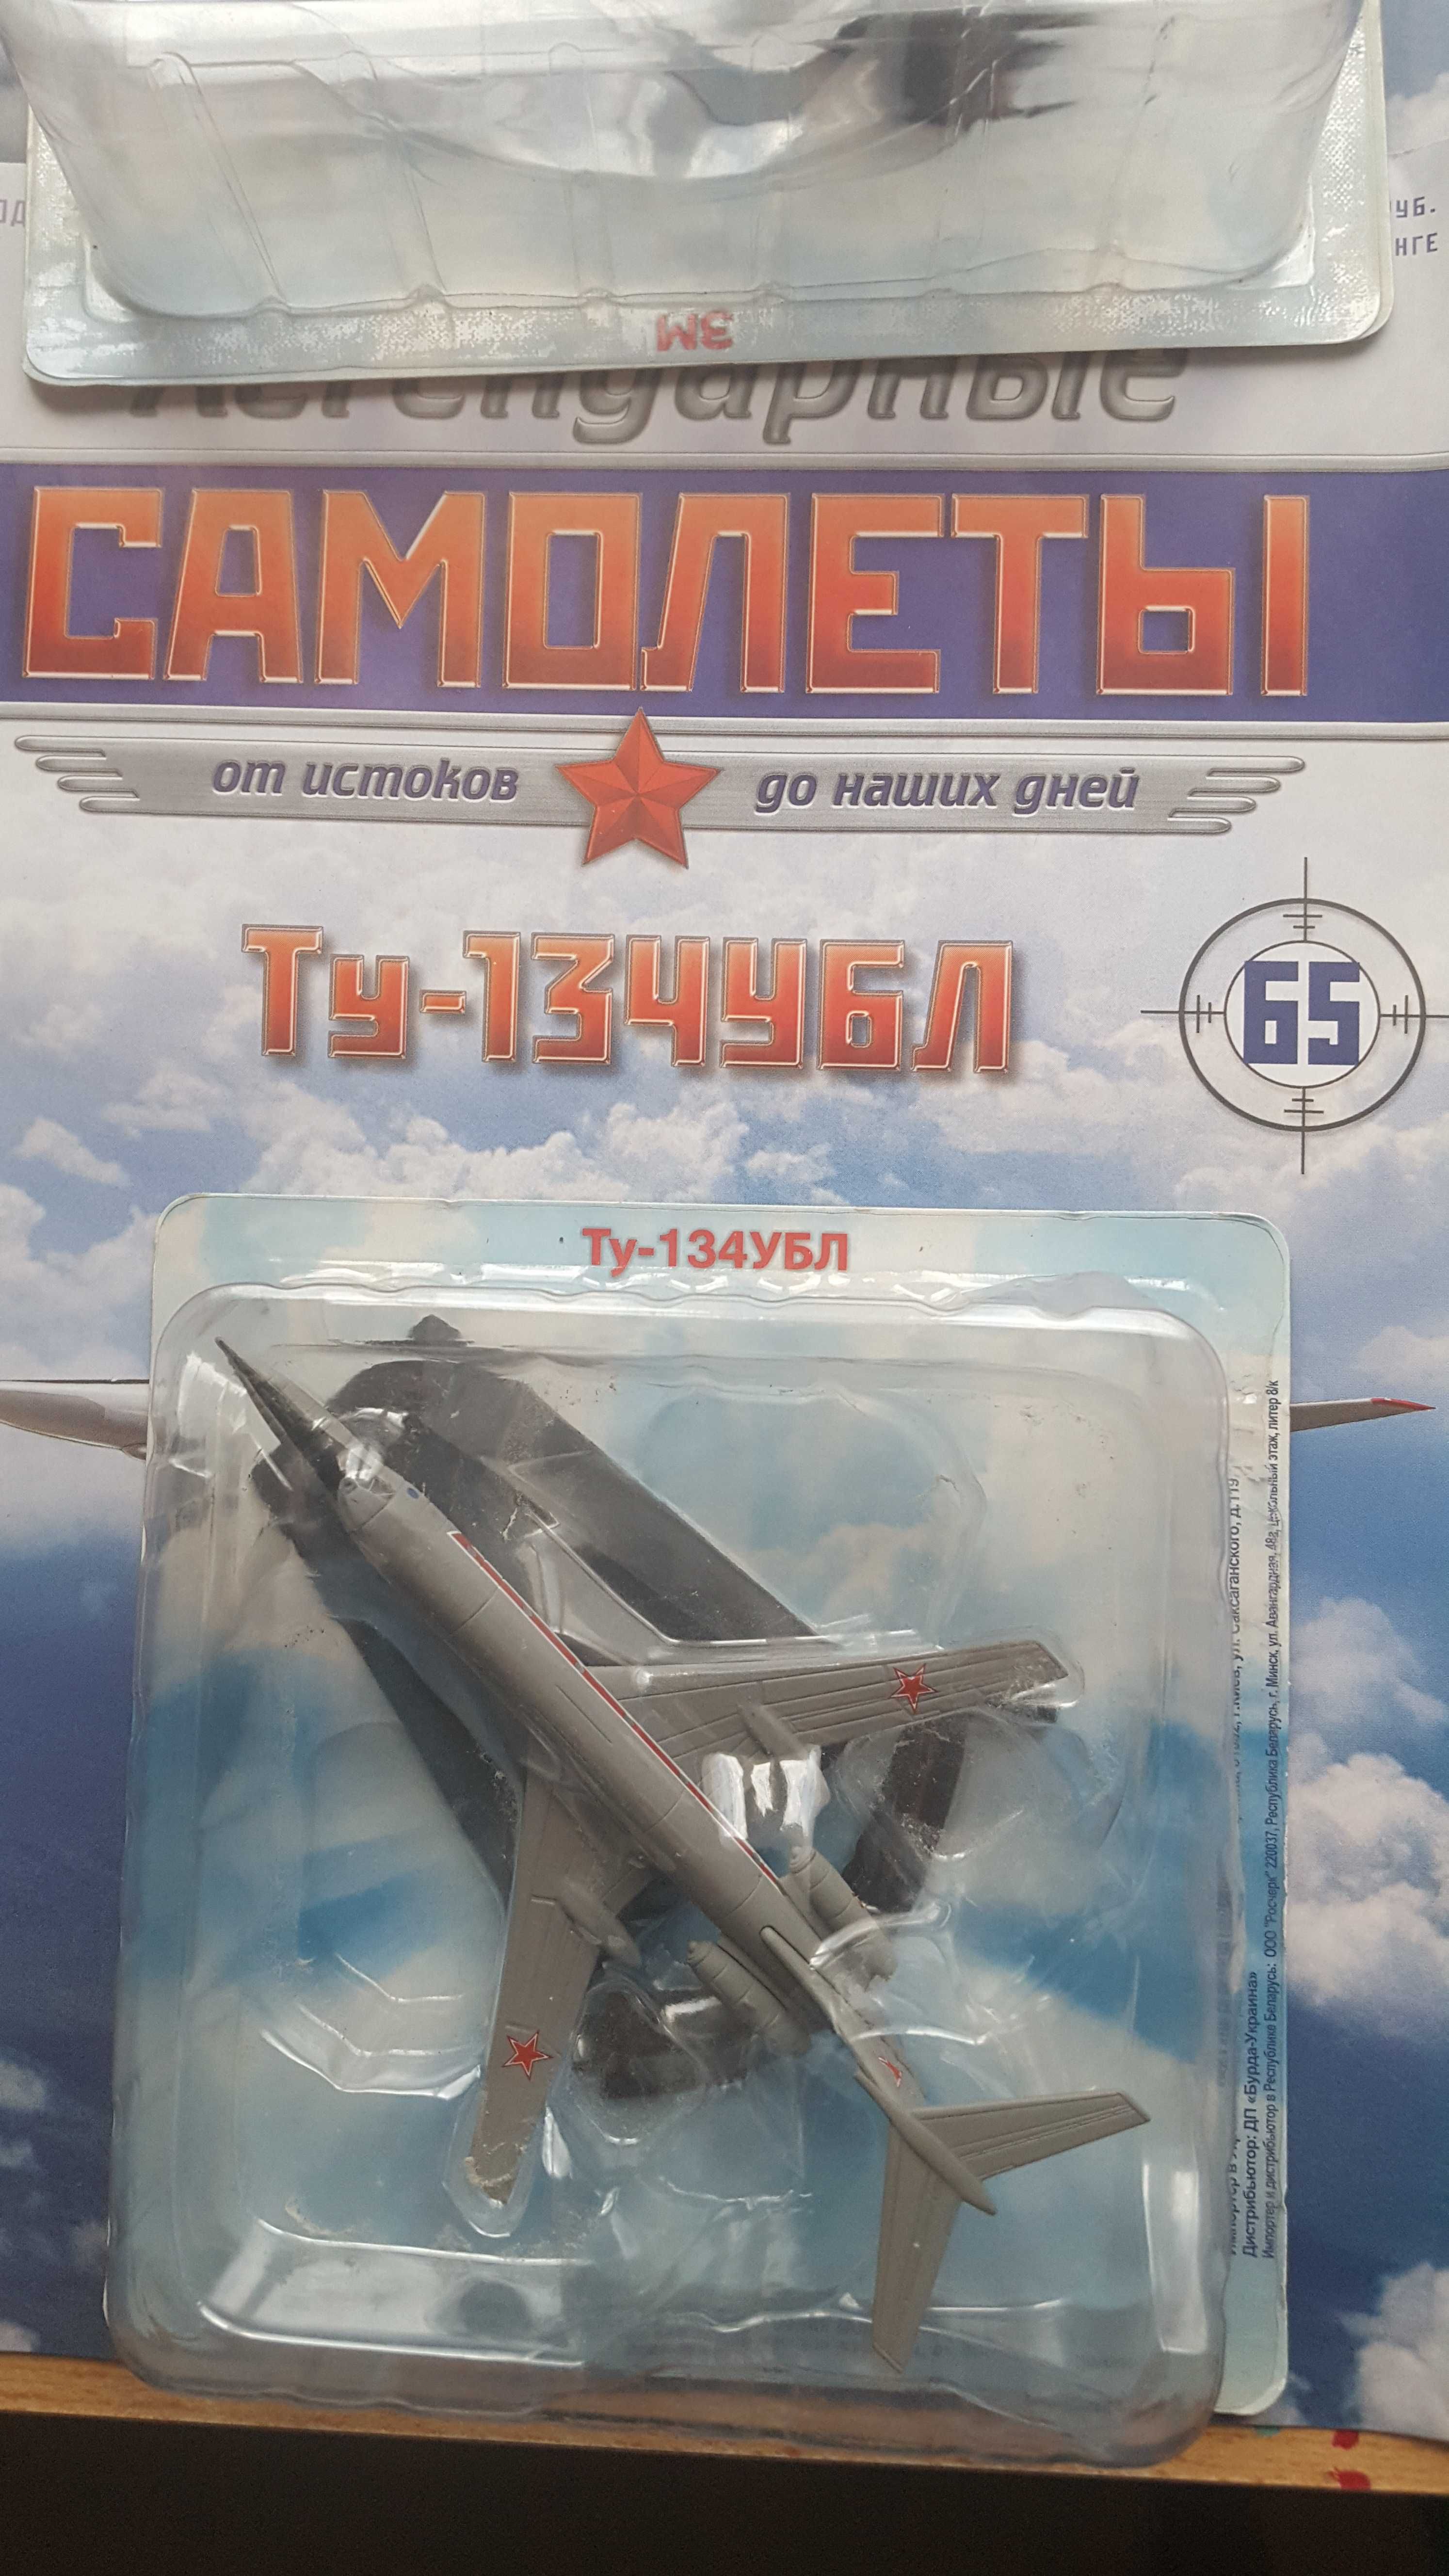 Ту-134УБЛ, Ил-38, Дб-3 Легендарные самолеты Деагостини с журналами